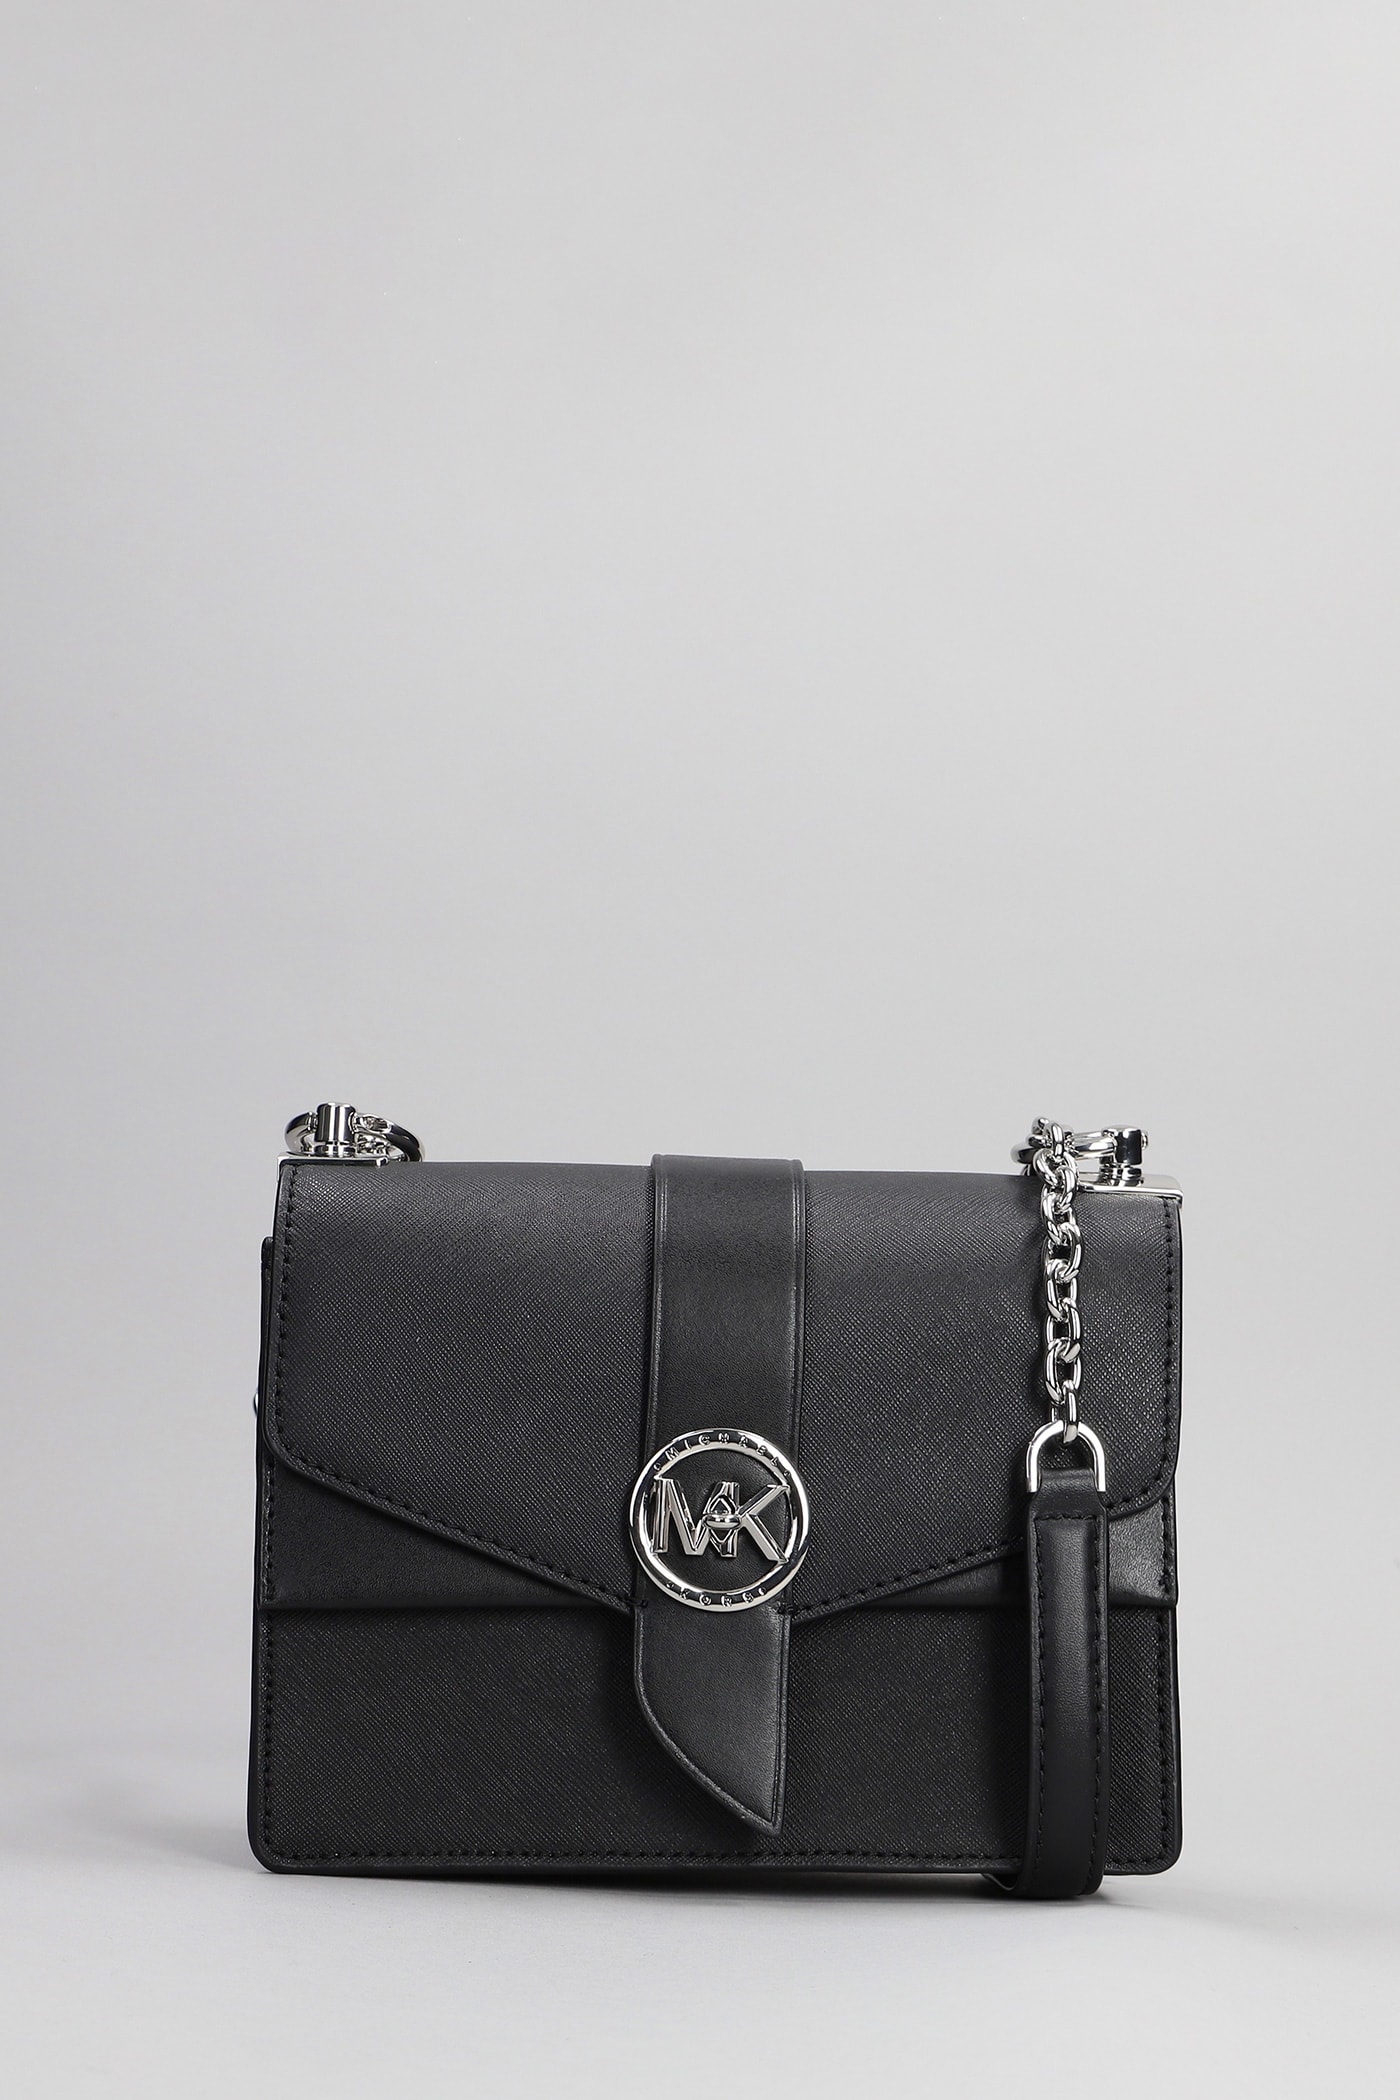 Michael Kors Greenwich Shoulder Bag In Black Leather